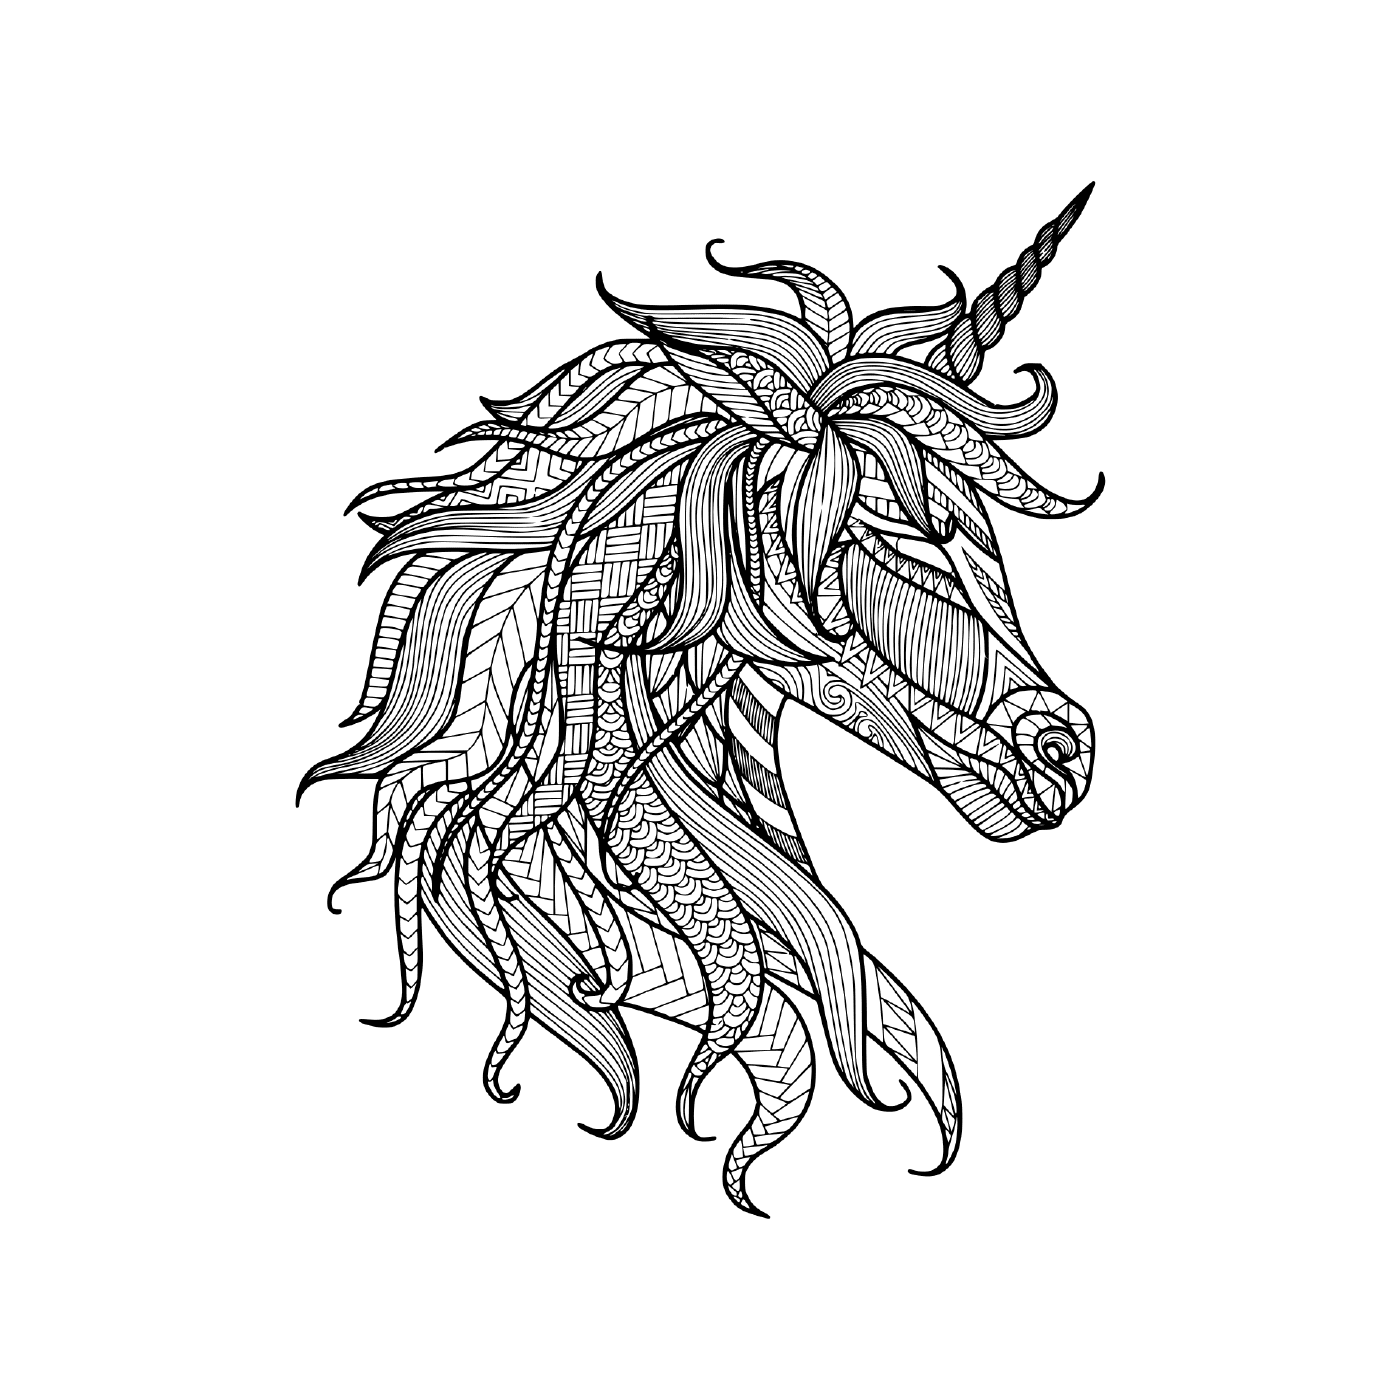  zentangle-style adult unicorn 